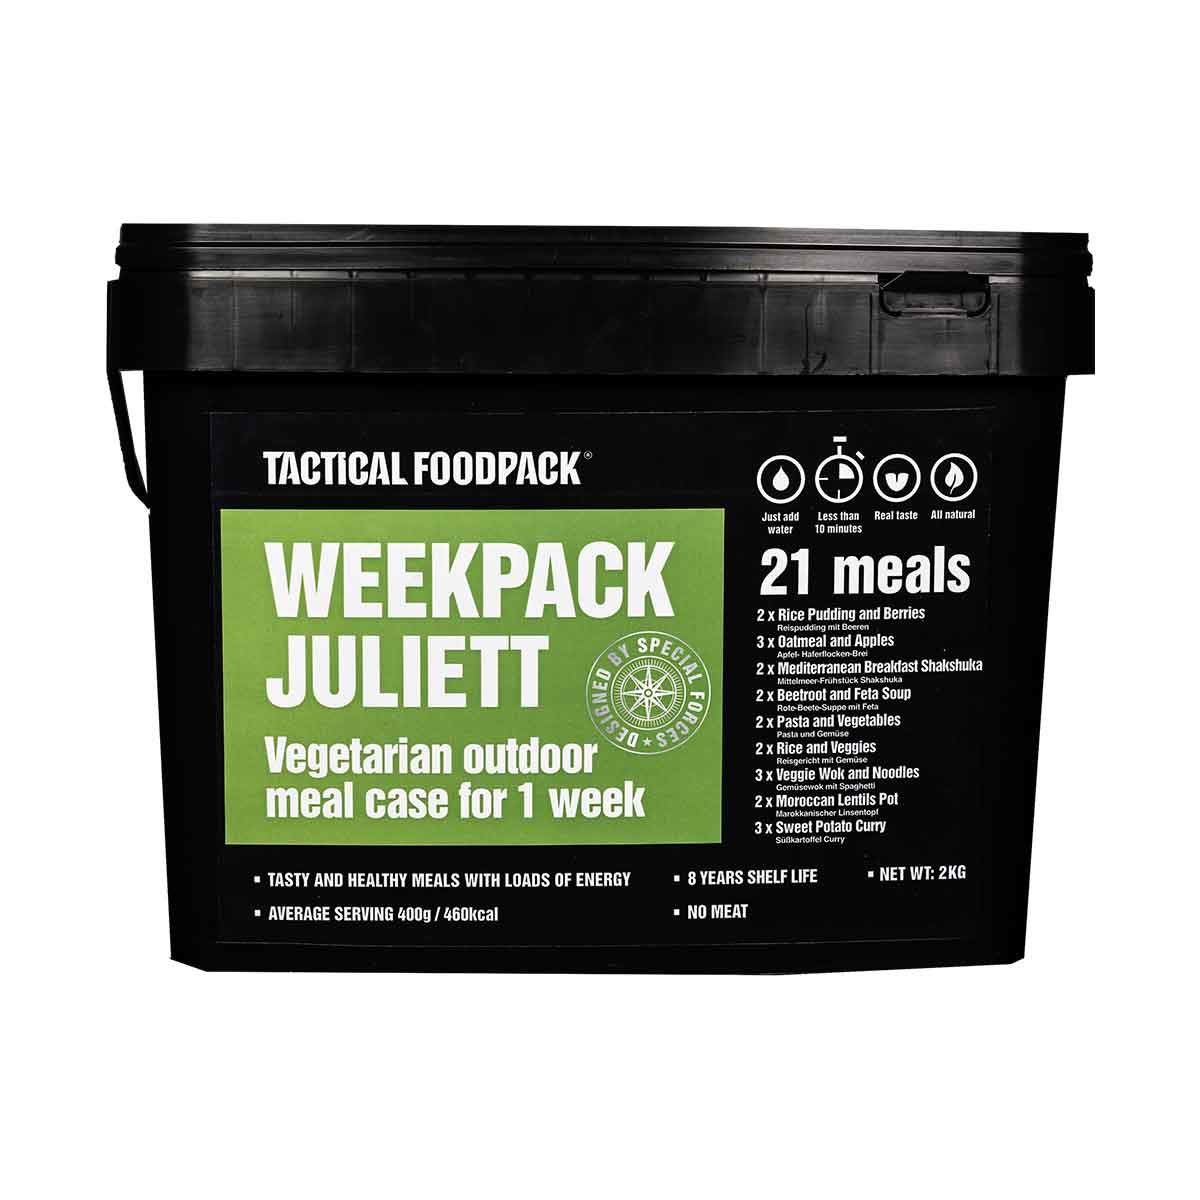 7-days vegetarian food package - Tactical WeekPack Juliett - 8 years